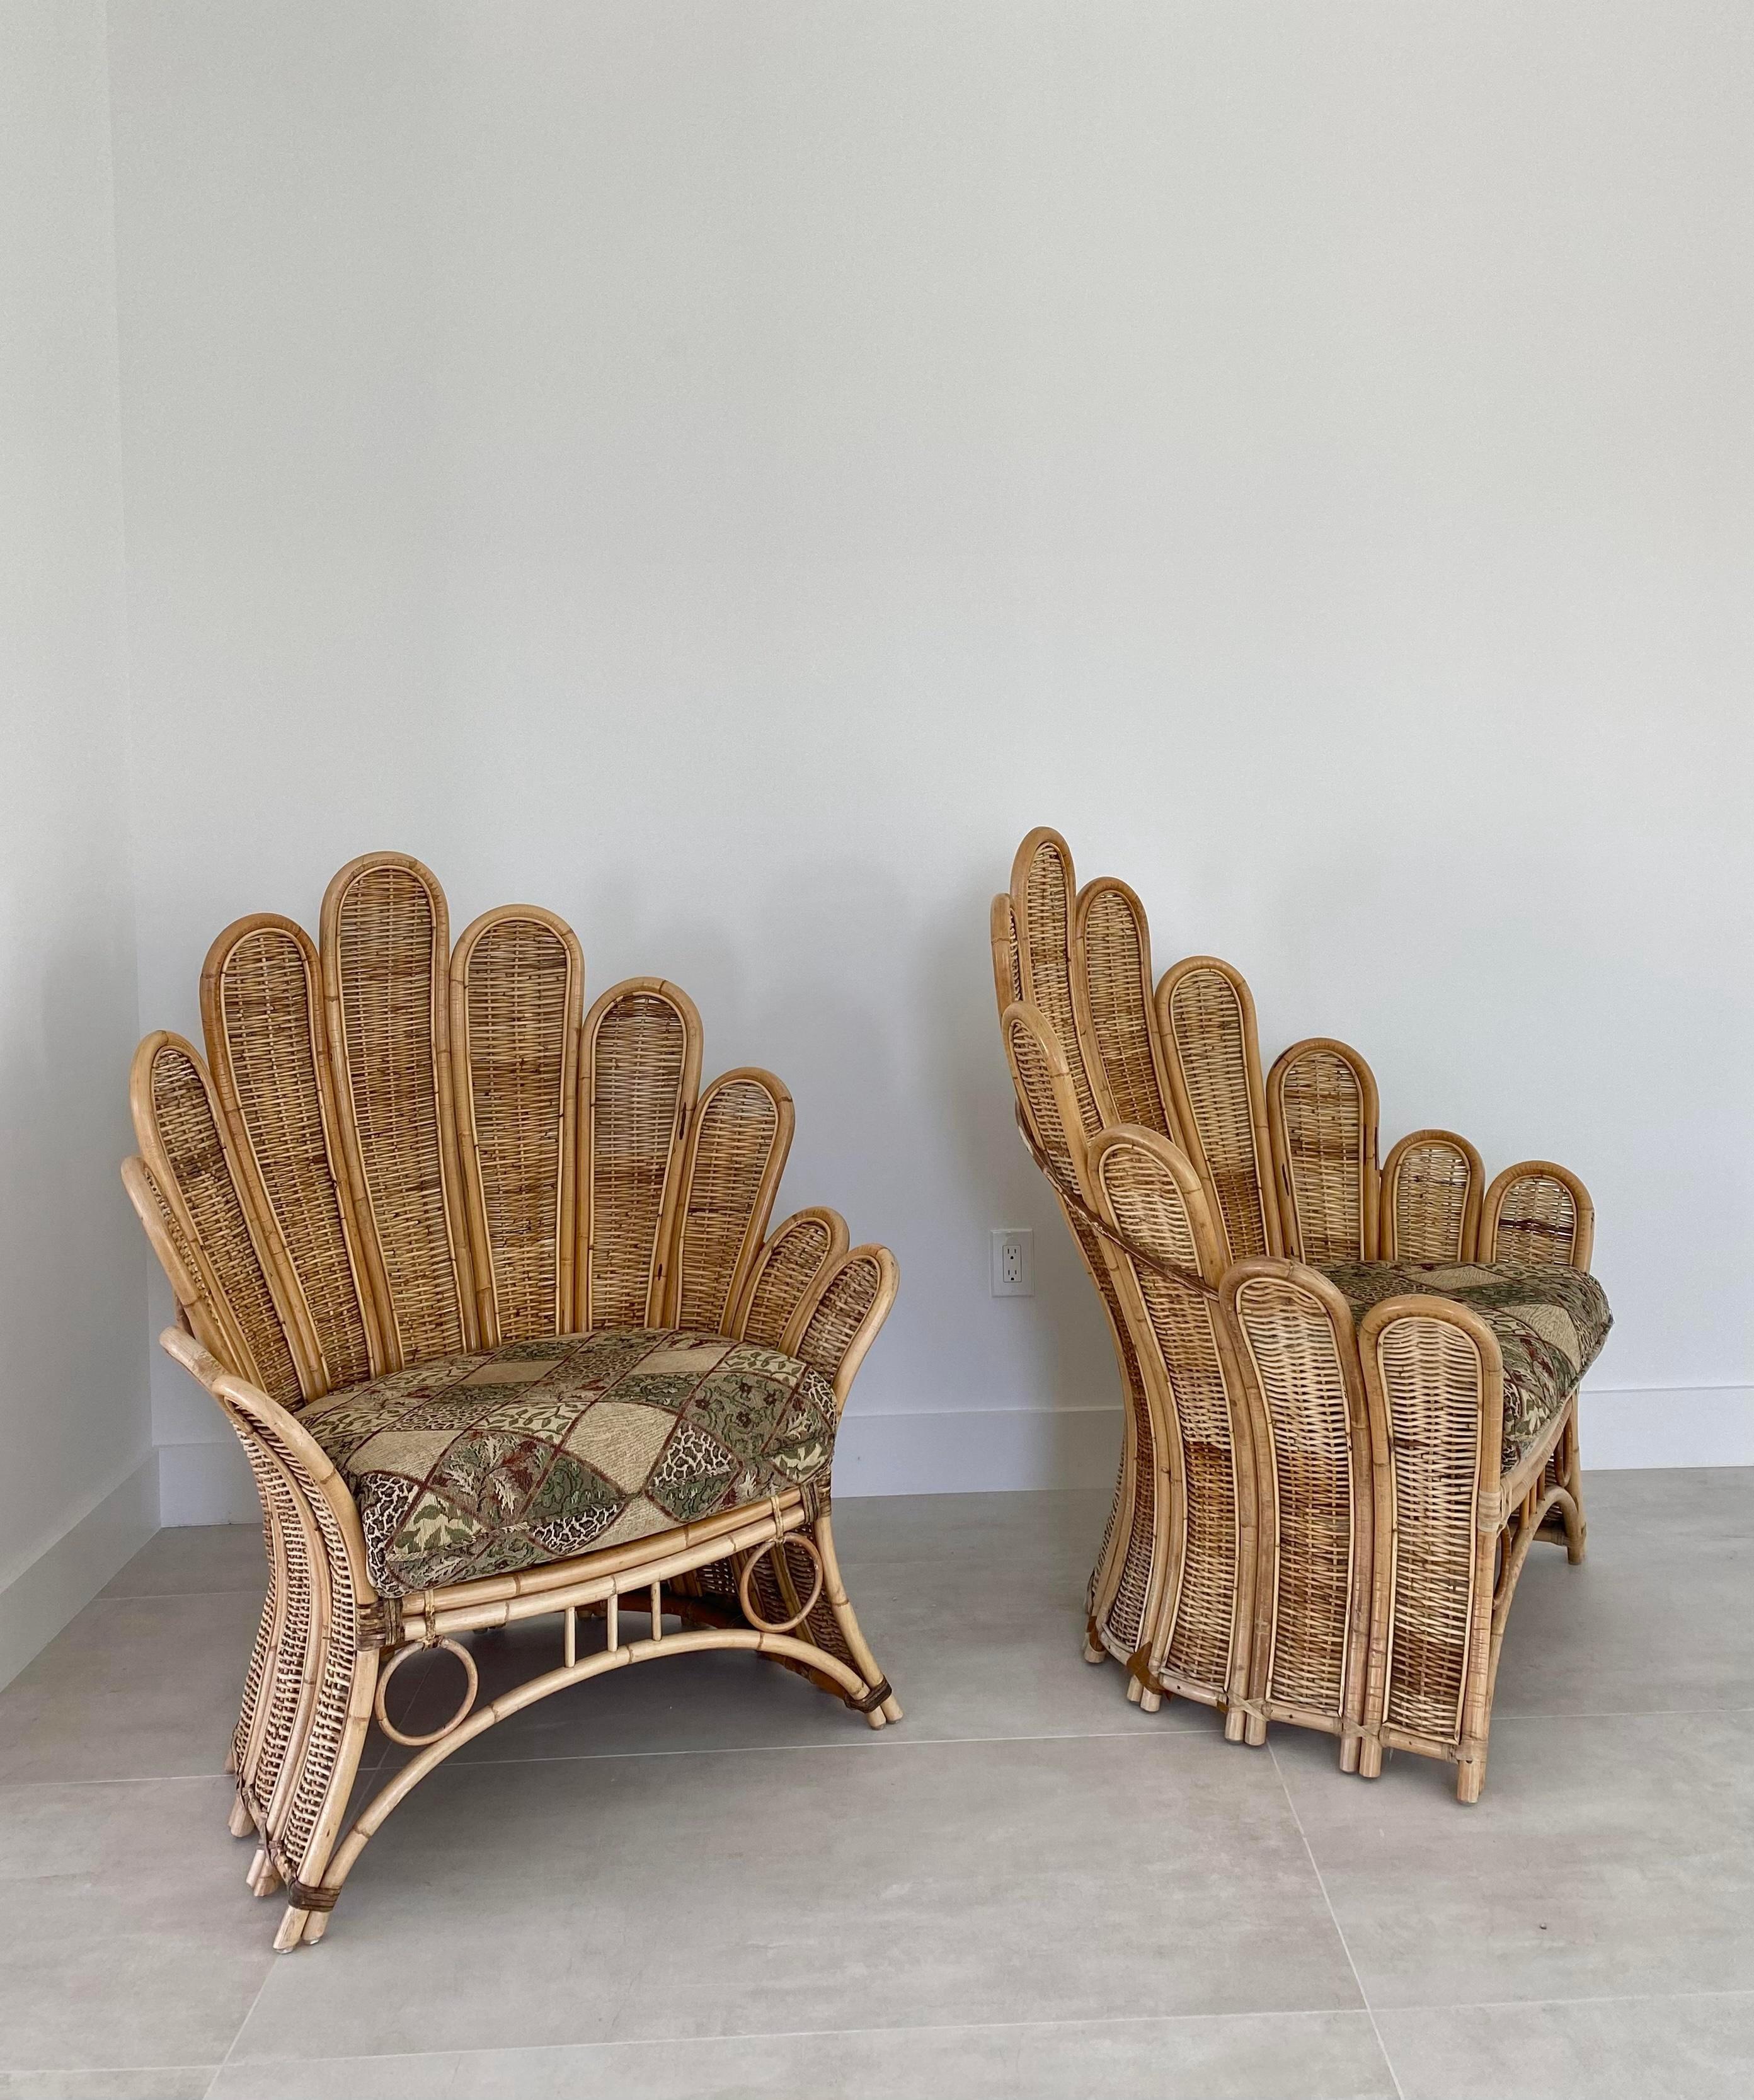 Großflächige Sessel aus Palmwedeln, ca. 1980er Jahre. Ikonisches Design in fachmännisch konstruierten Rattan- und Flechtrahmen mit hochwertigen Ledereinfassungen. Diese Stühle sind selten auf dem Markt, vor allem als Paar, und fangen ein tropisch